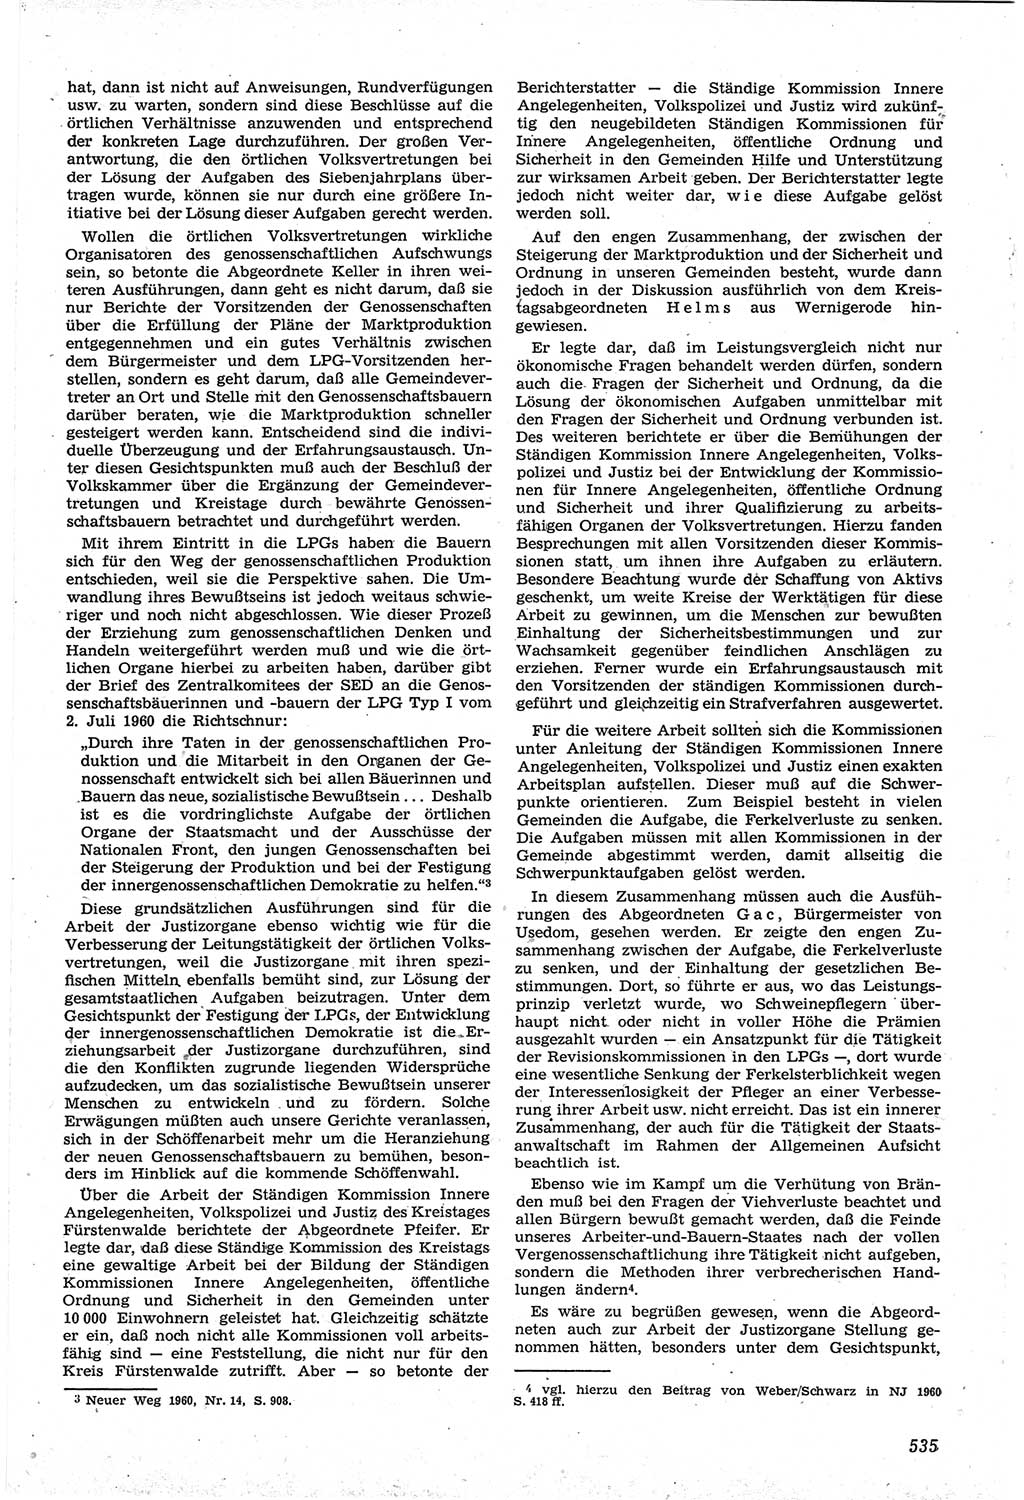 Neue Justiz (NJ), Zeitschrift für Recht und Rechtswissenschaft [Deutsche Demokratische Republik (DDR)], 14. Jahrgang 1960, Seite 535 (NJ DDR 1960, S. 535)